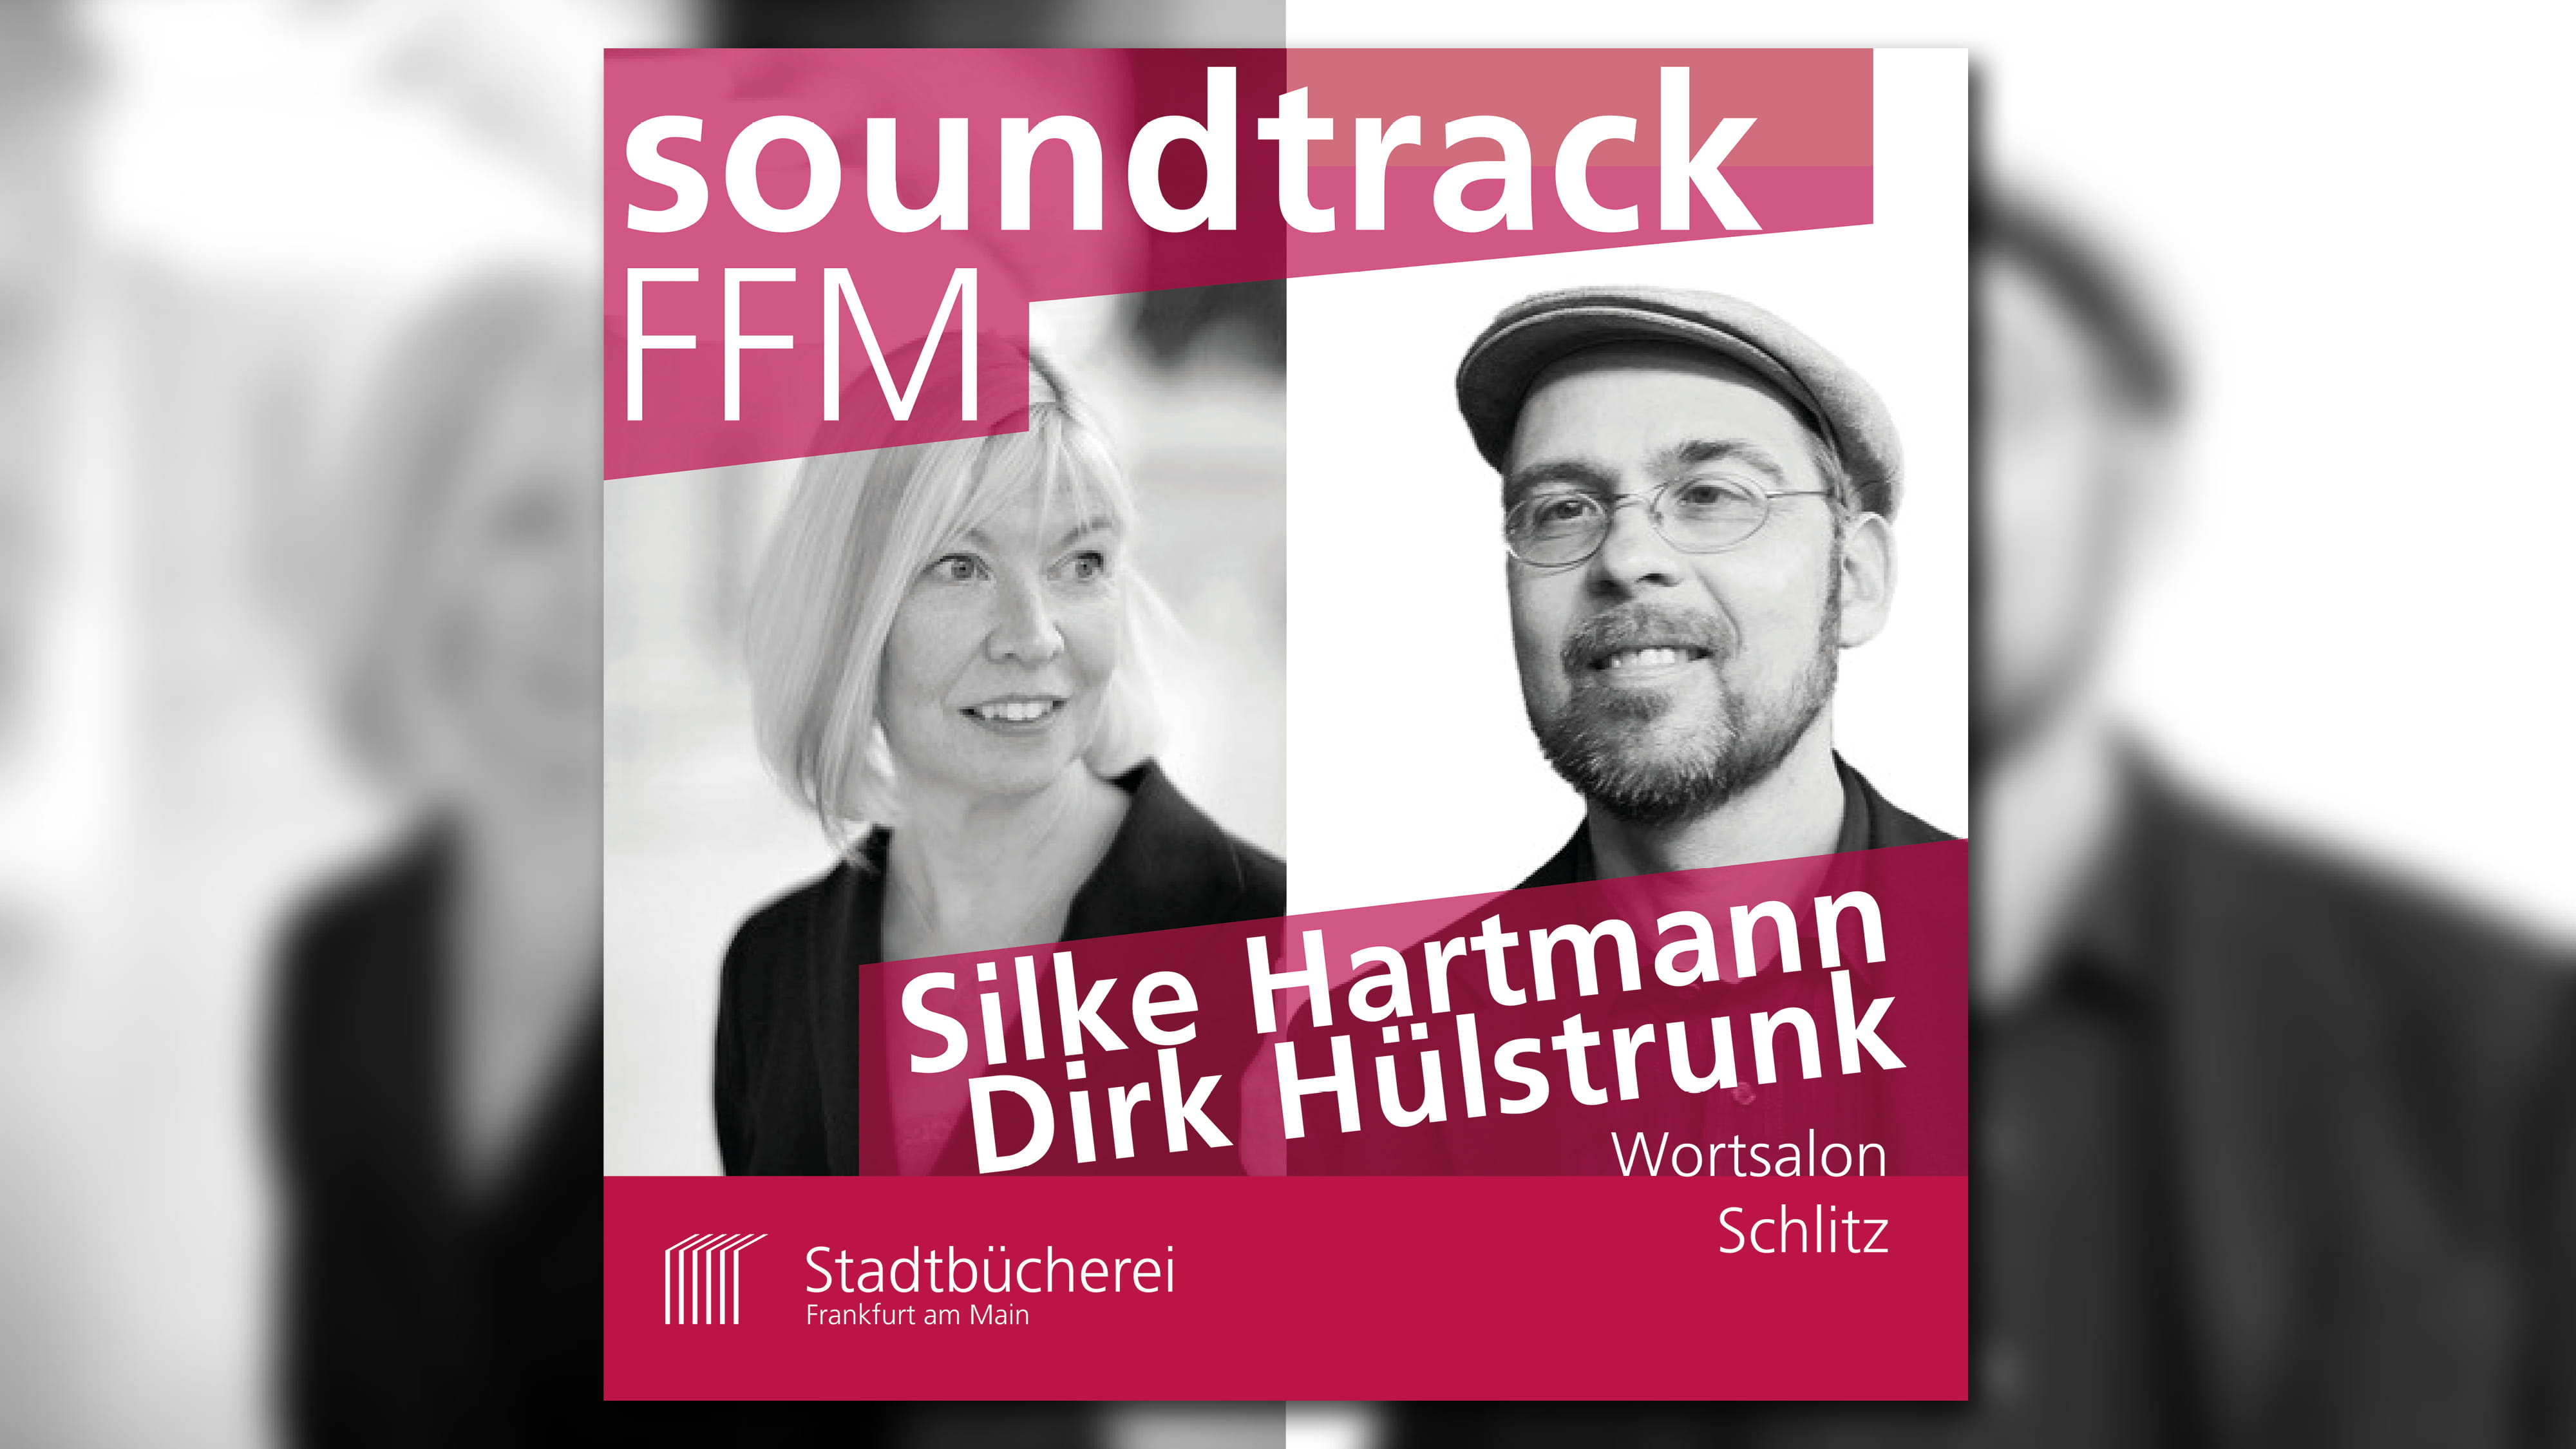 Silke Hartmann und Dirk Hülstrunk vom Wortsalon Schlitz